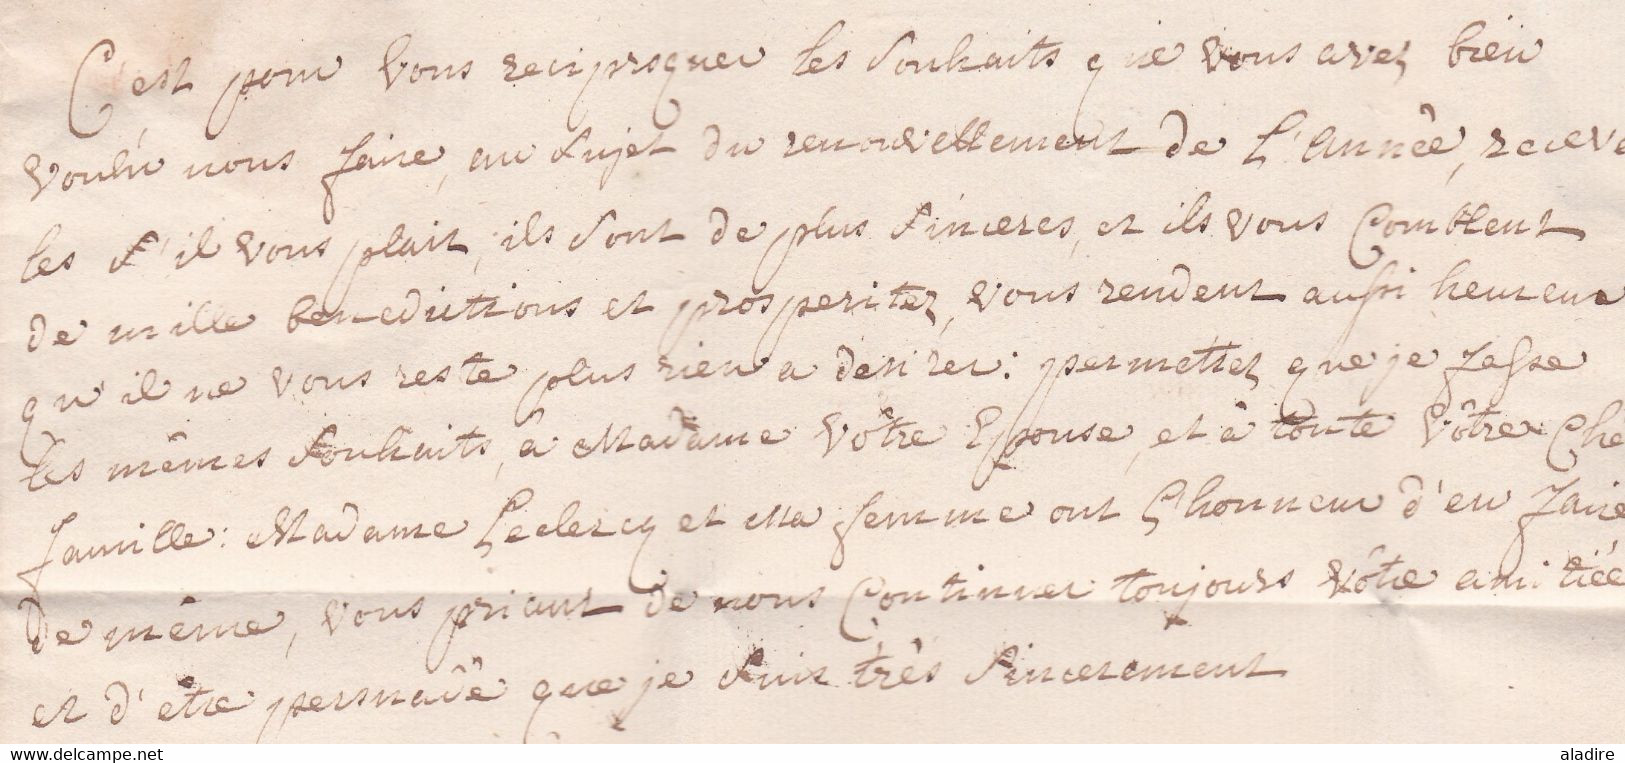 1760 - Marque Postale BRUXELLES sur Lettre pliée avec correspondance familiale en français vers Bruges